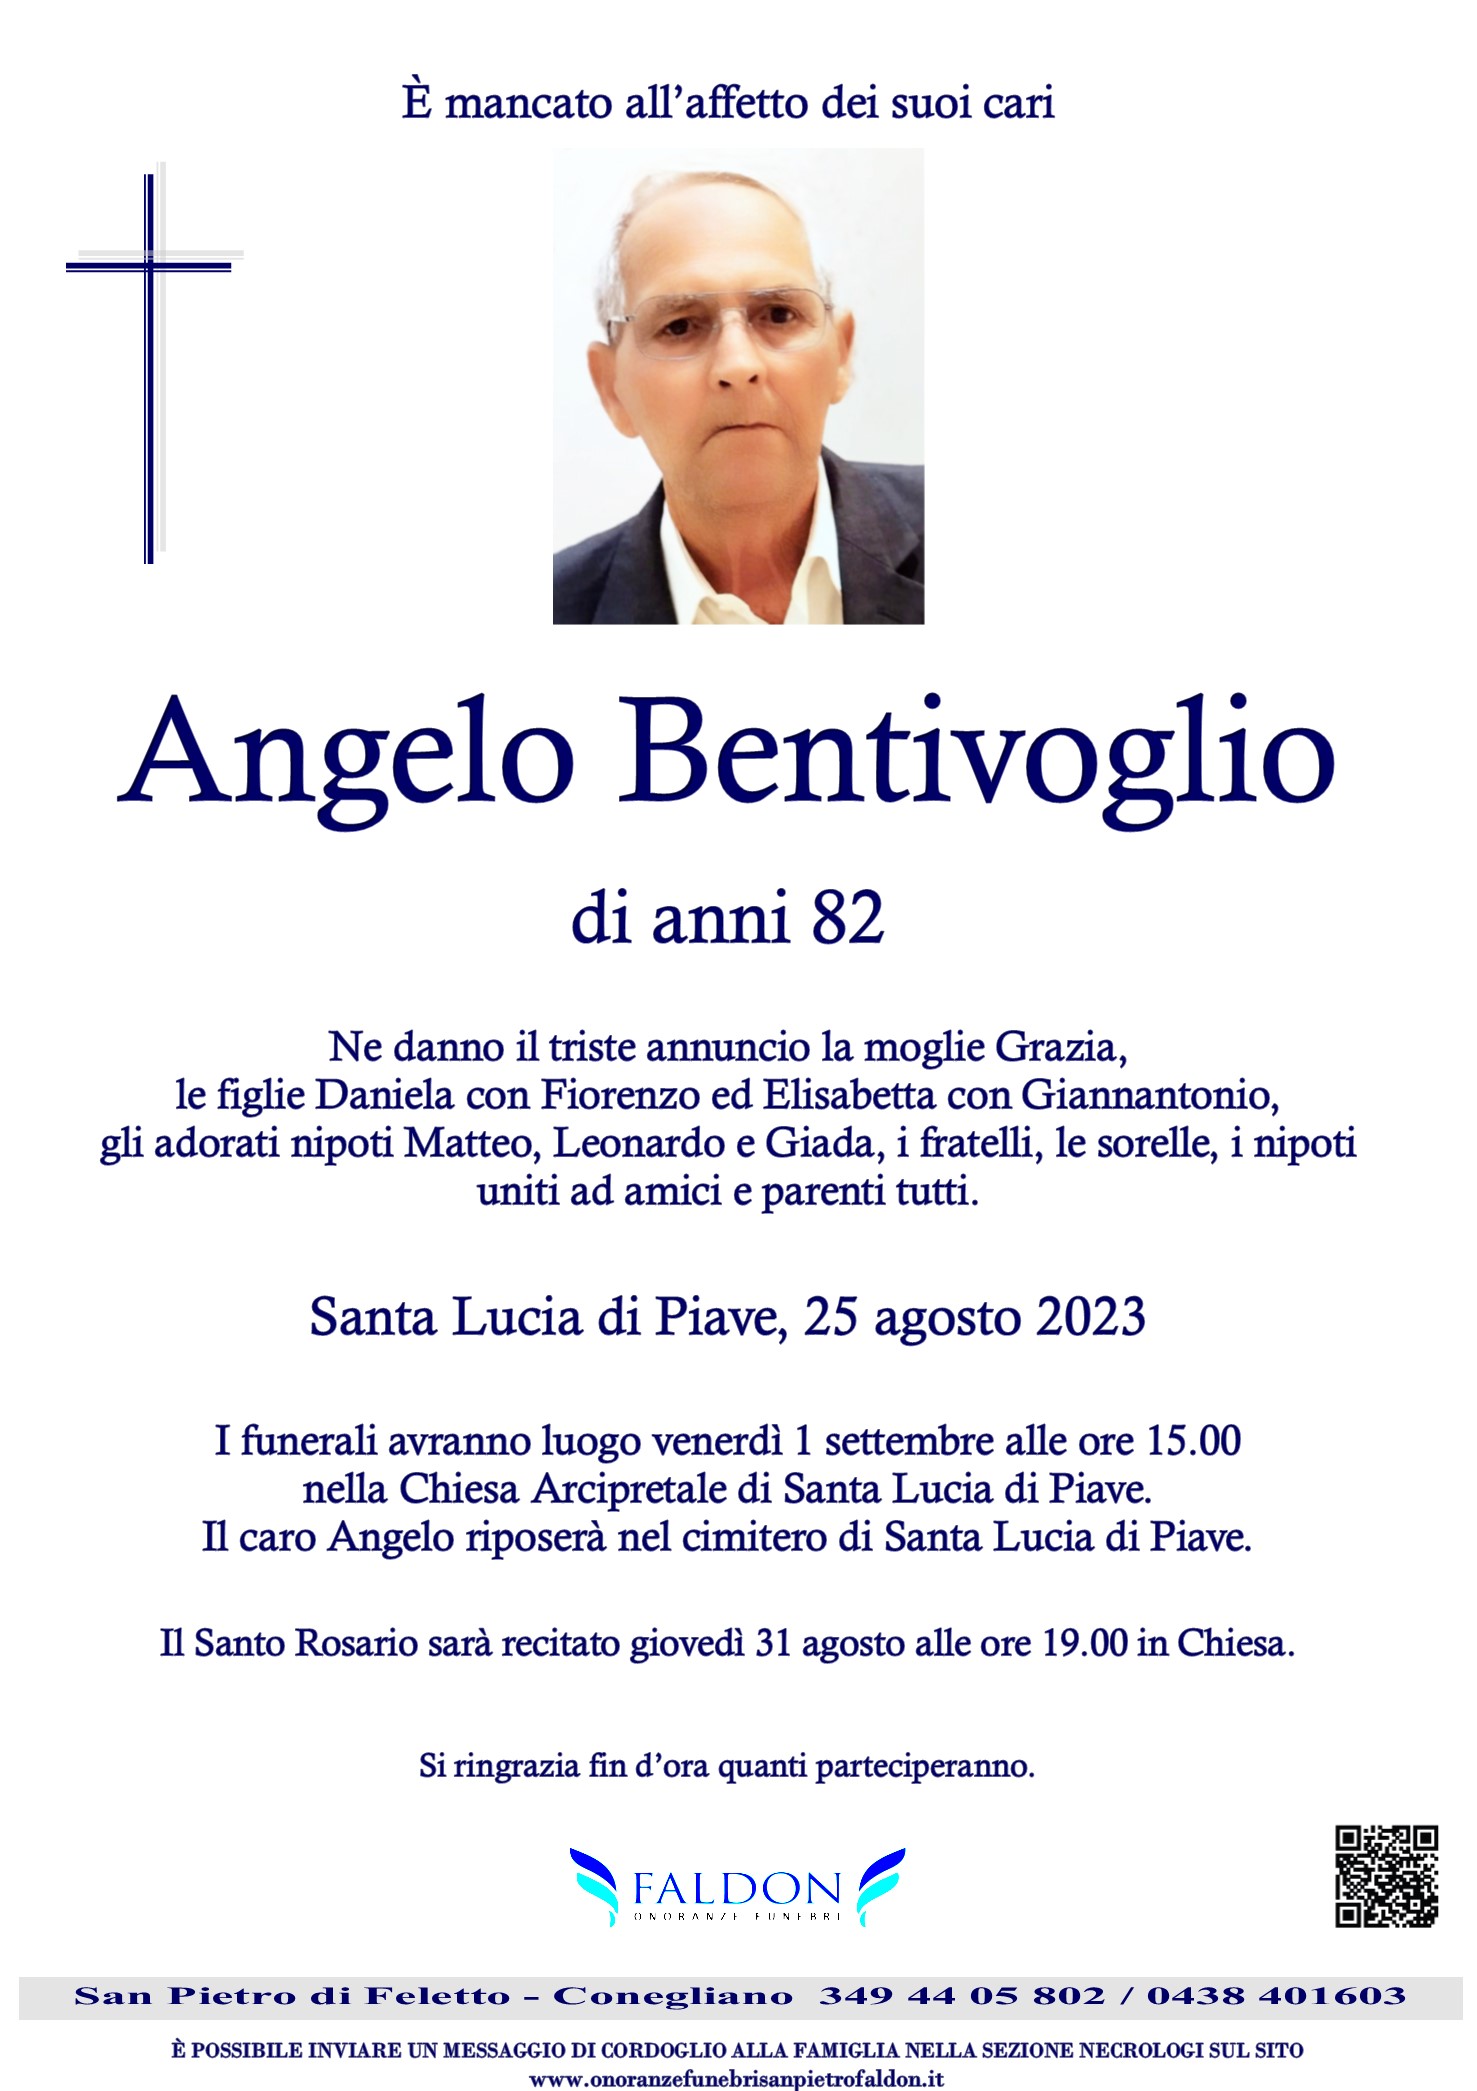 Angelo Bentivoglio